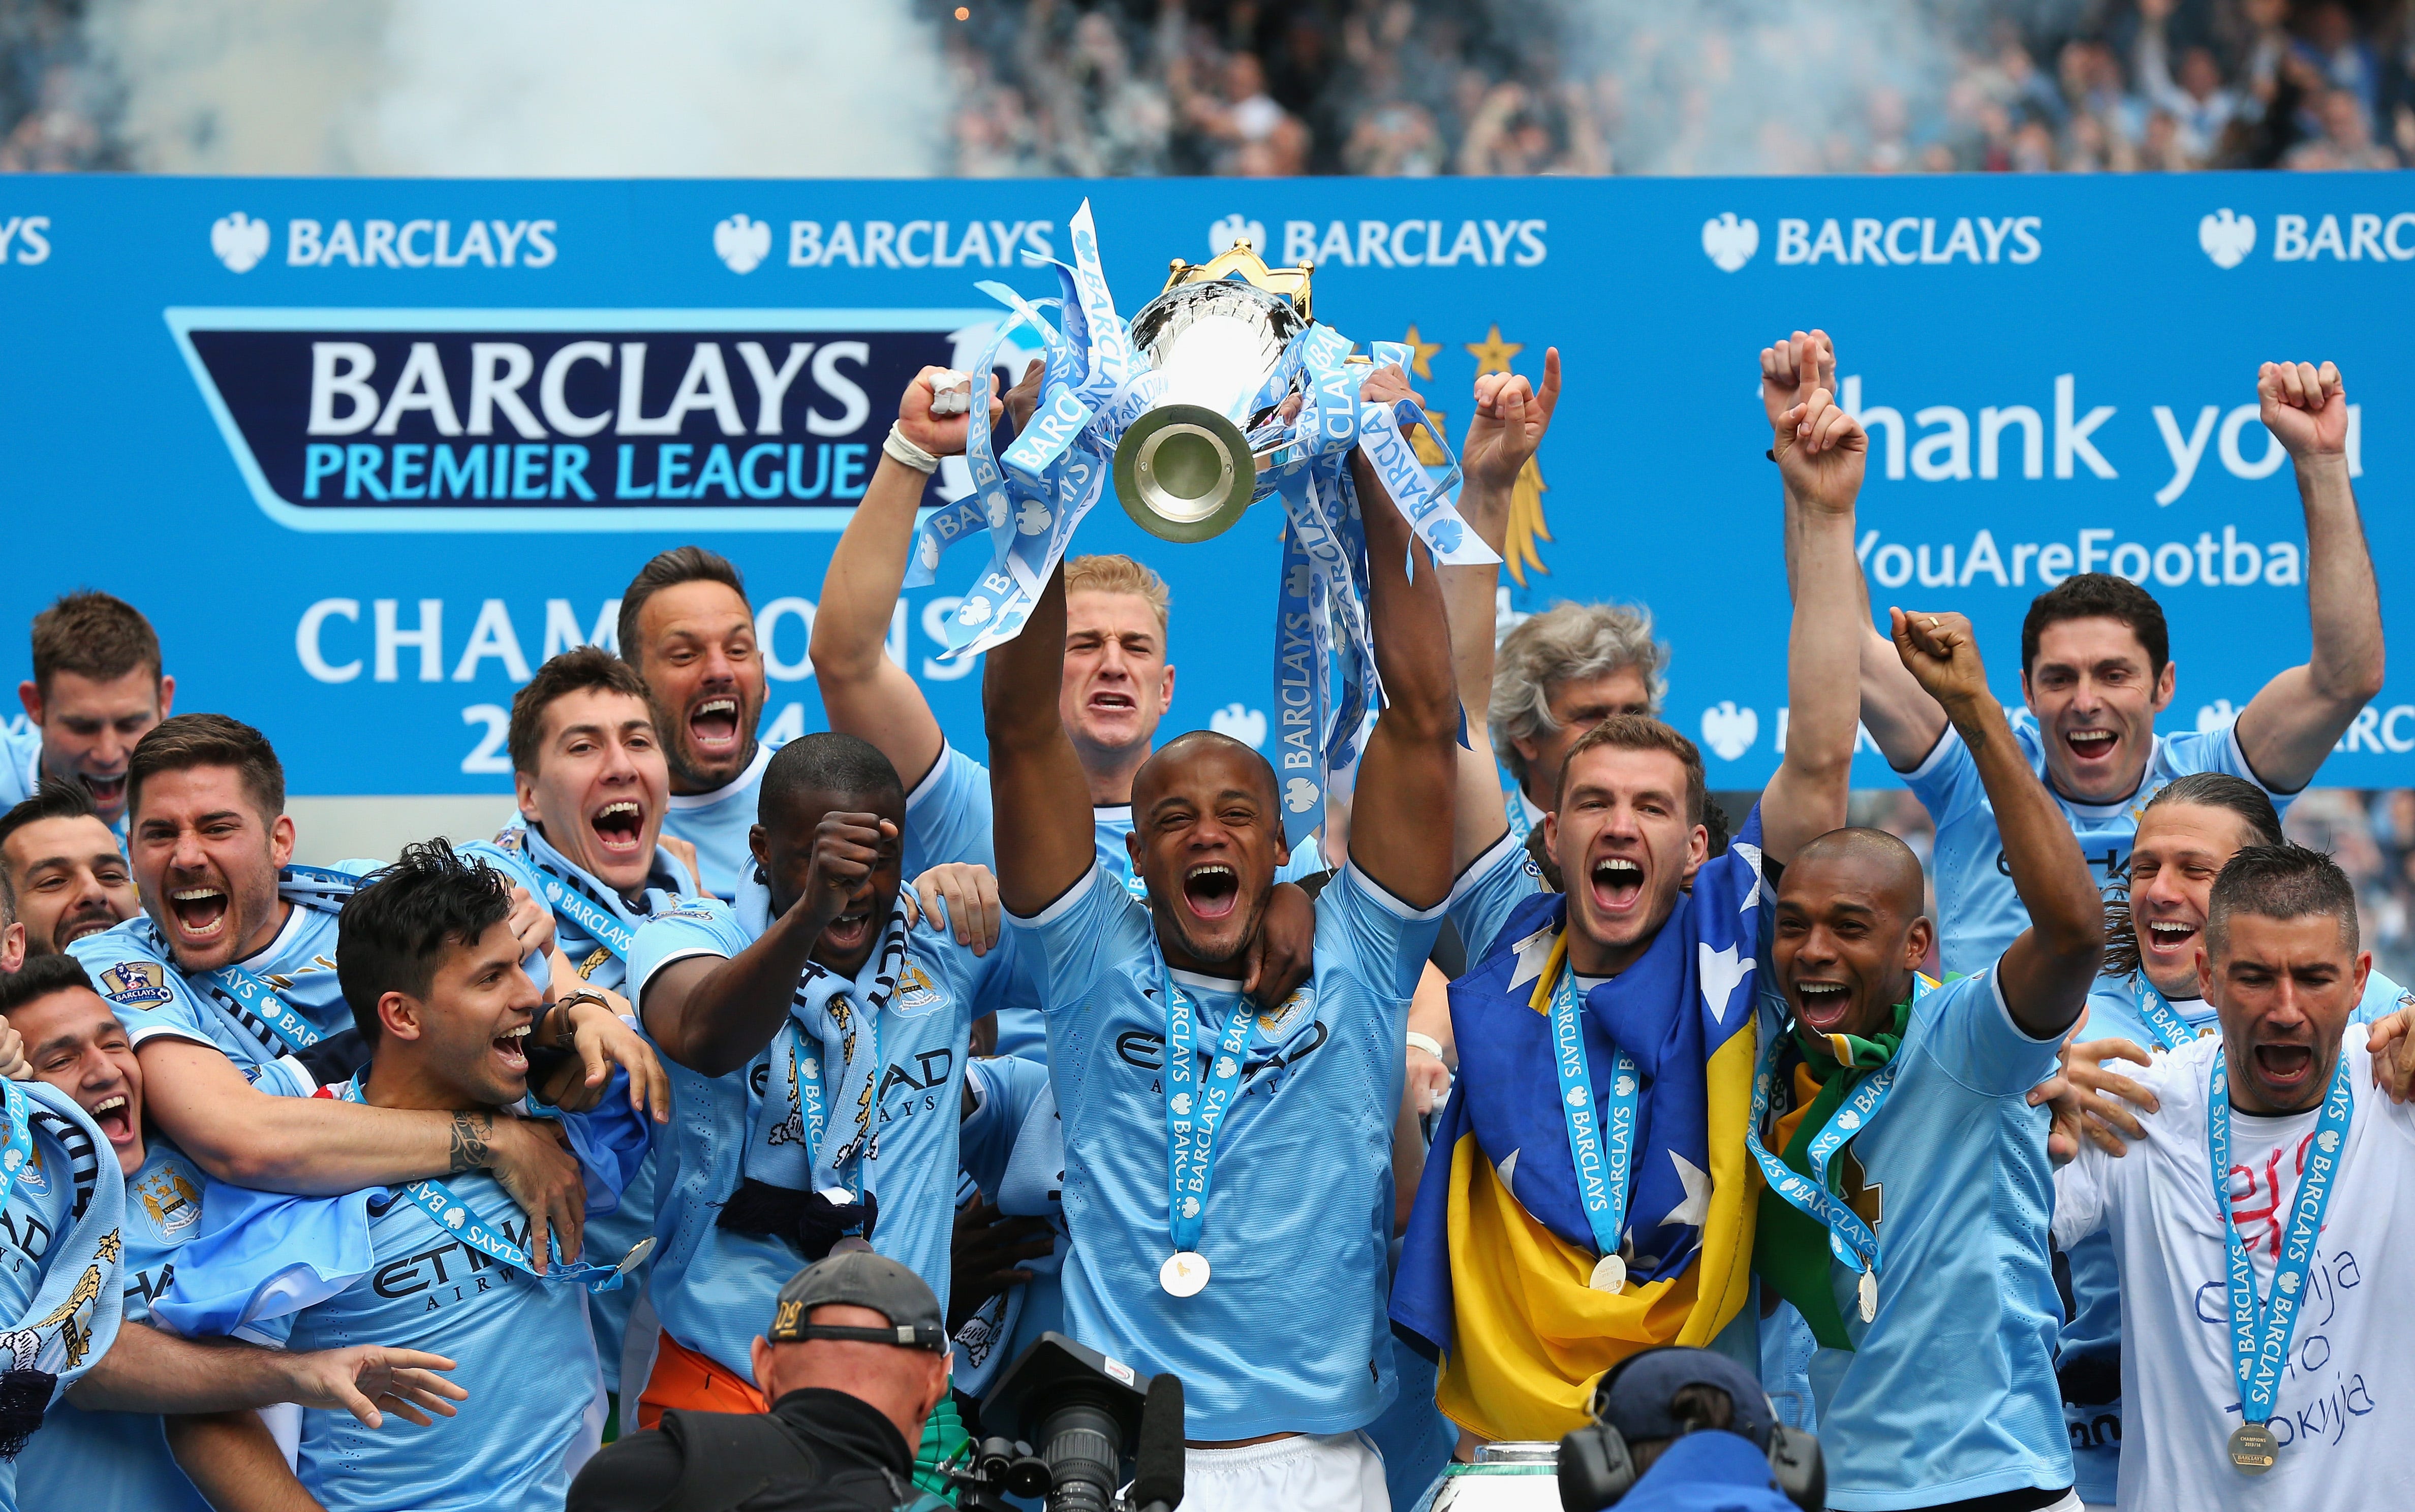 Manchester City Premier League trophy 2013-14